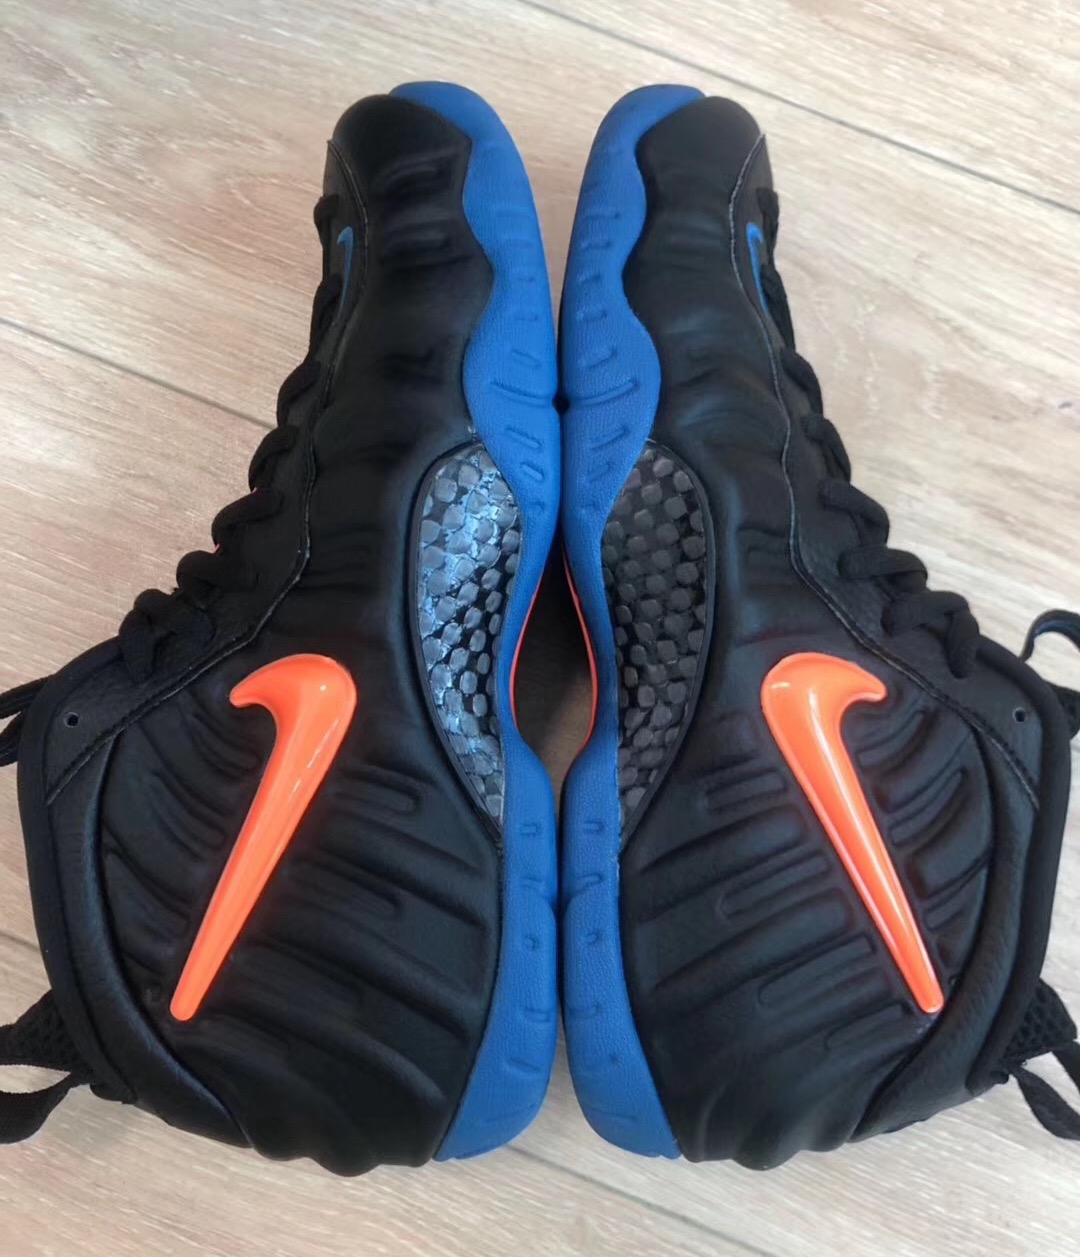 Nike Air Foamposite Pro Knicks Black Battle Blue Total Orange 624041